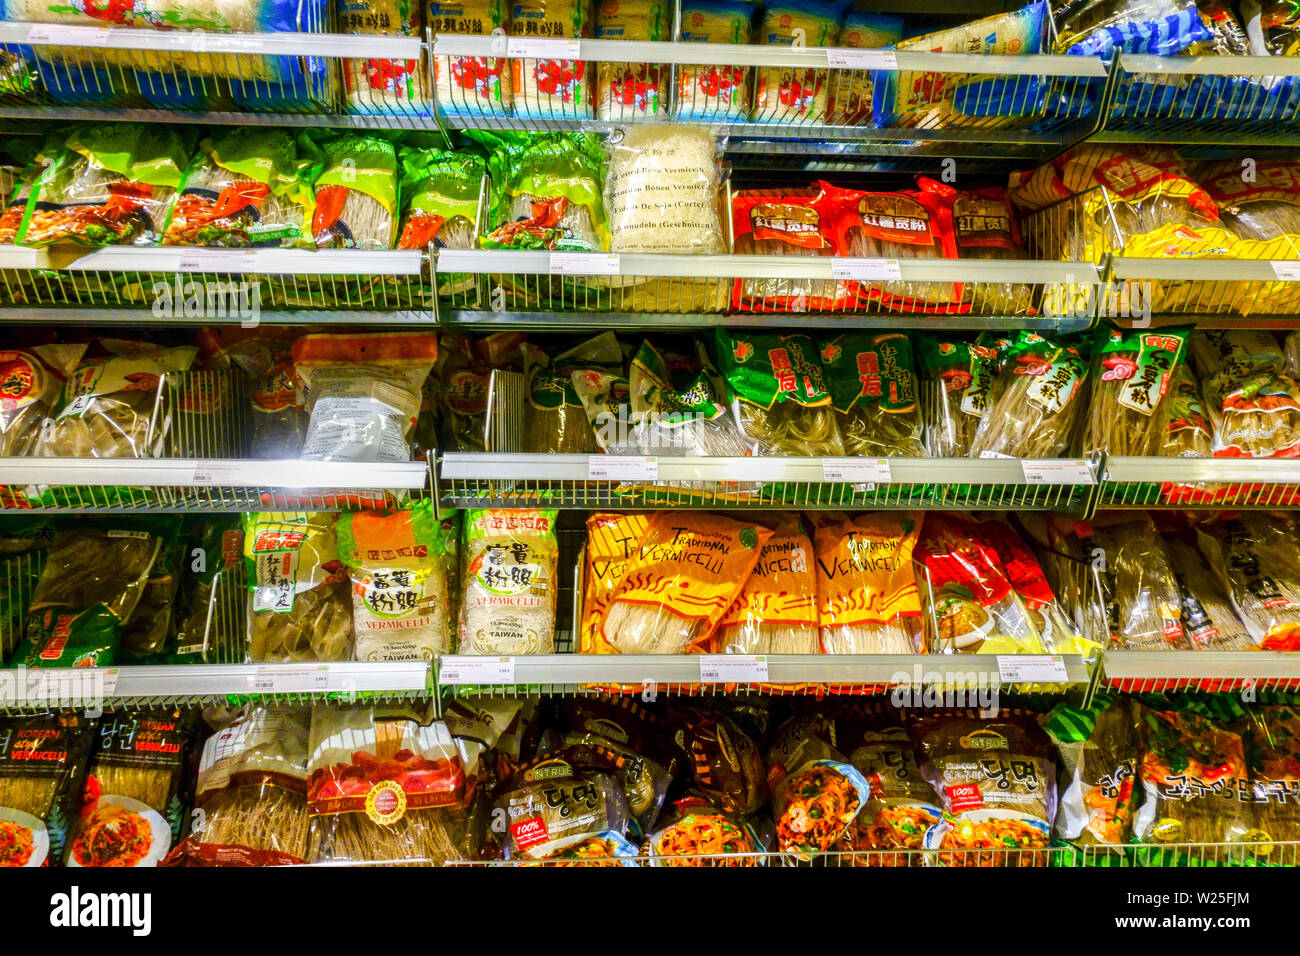 Supermercado asiático 'Ir a Asia" de las estanterías de los supermercados, arroz, fideos, Dresden, Alemania Foto de stock